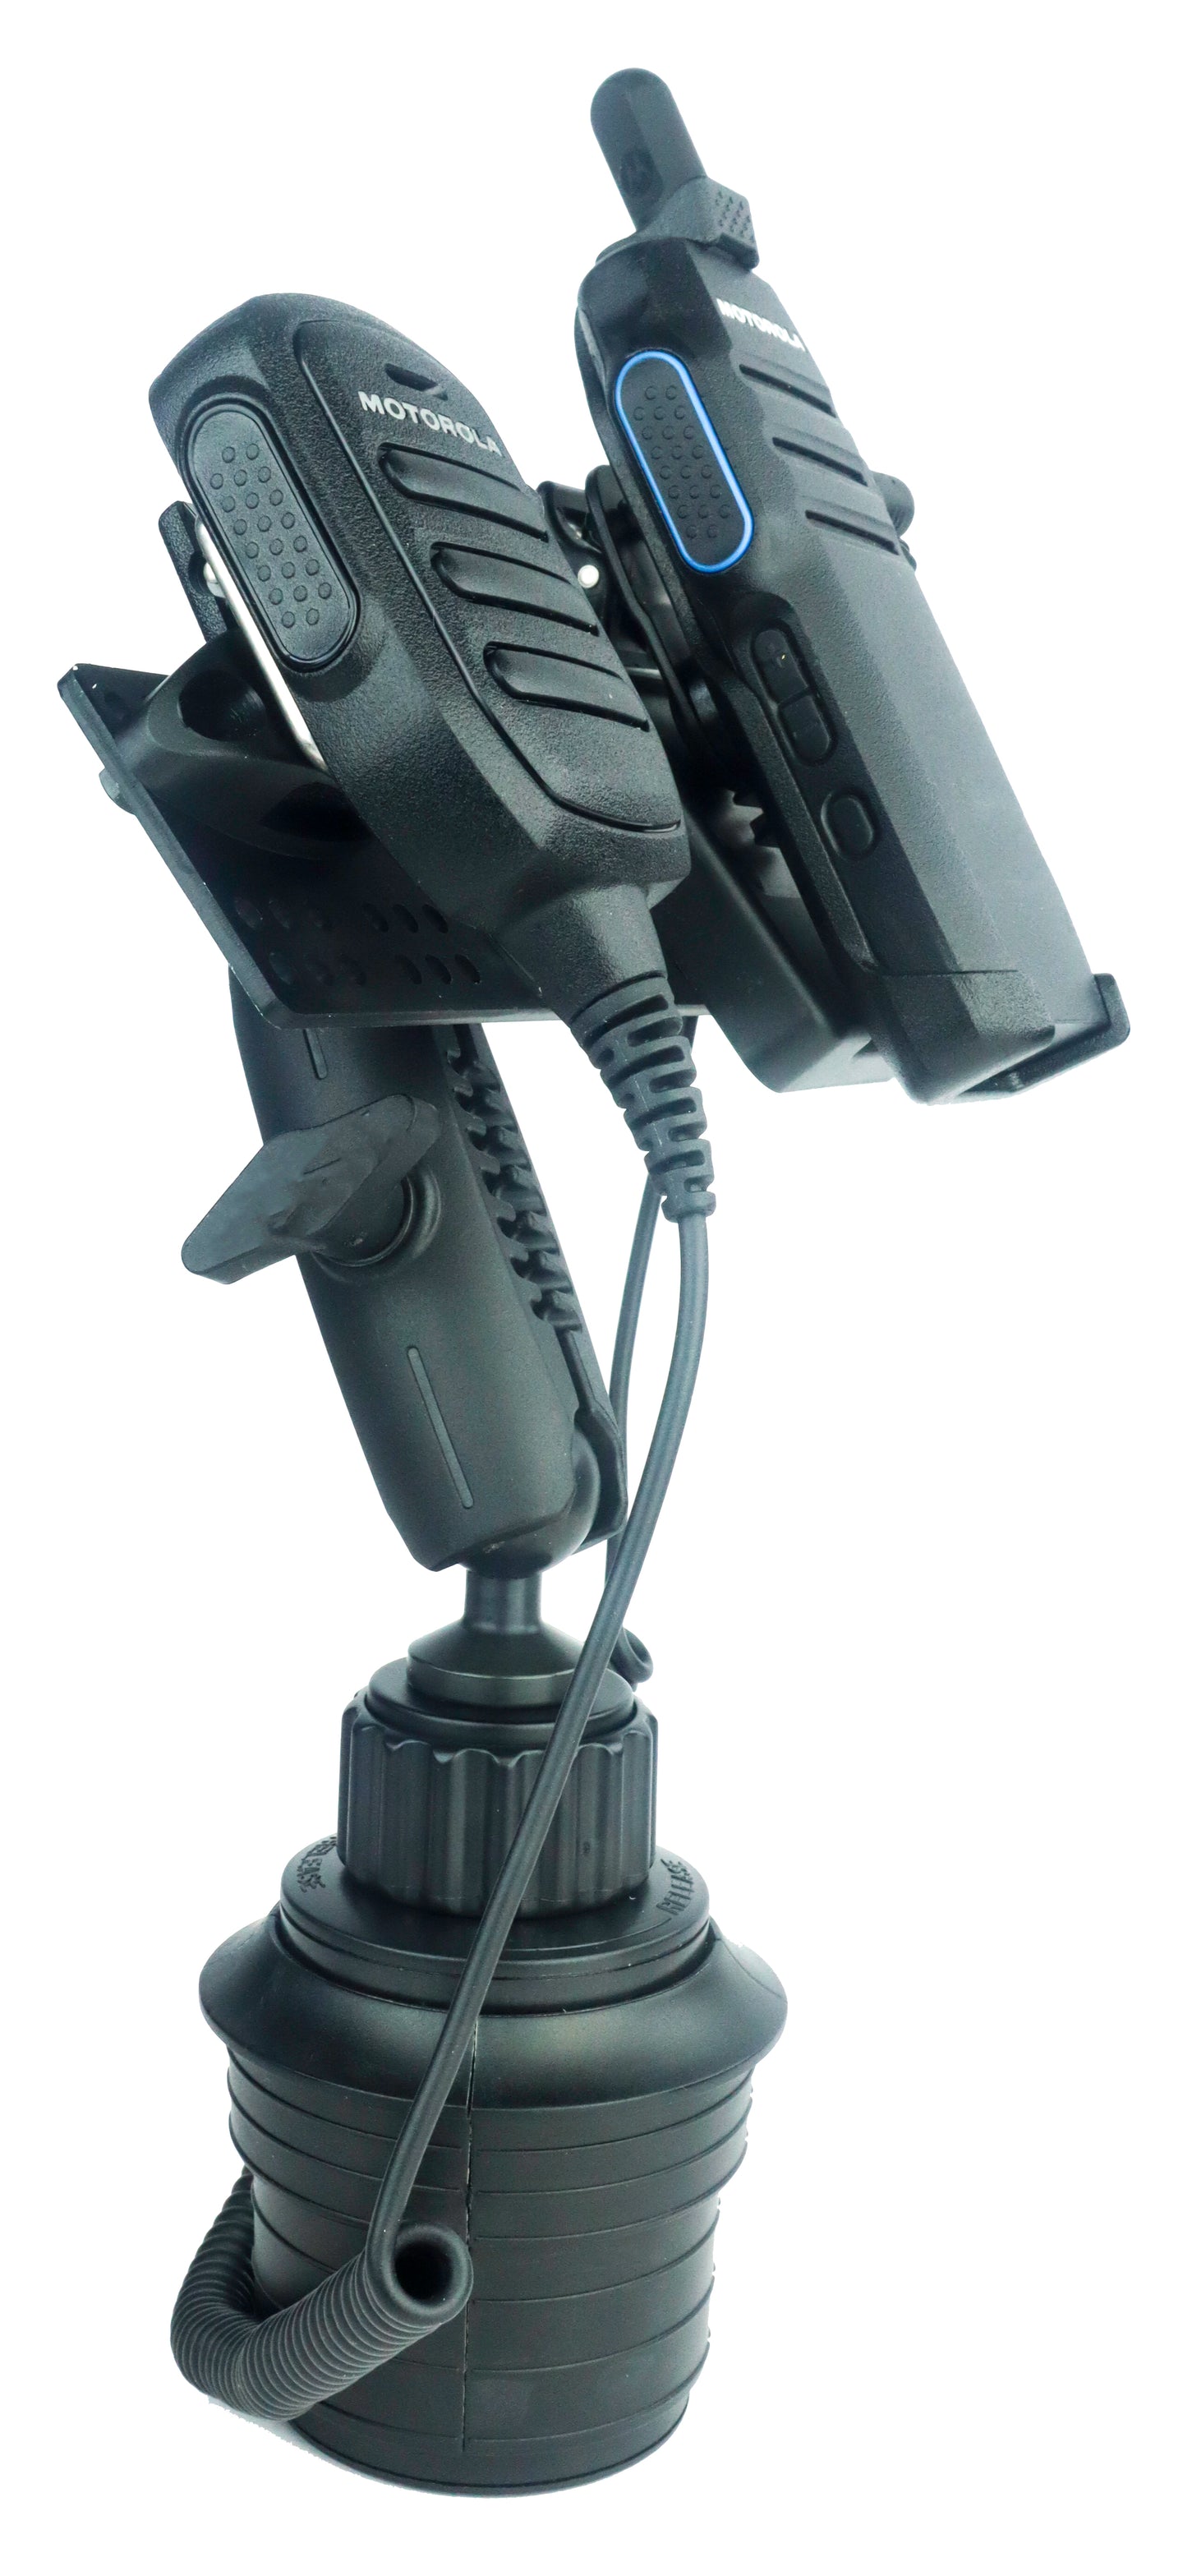 Industrial Fleet Cup Holder Mount With Microphone holder for Motorola Wave TLK110 TLK100 And SL300